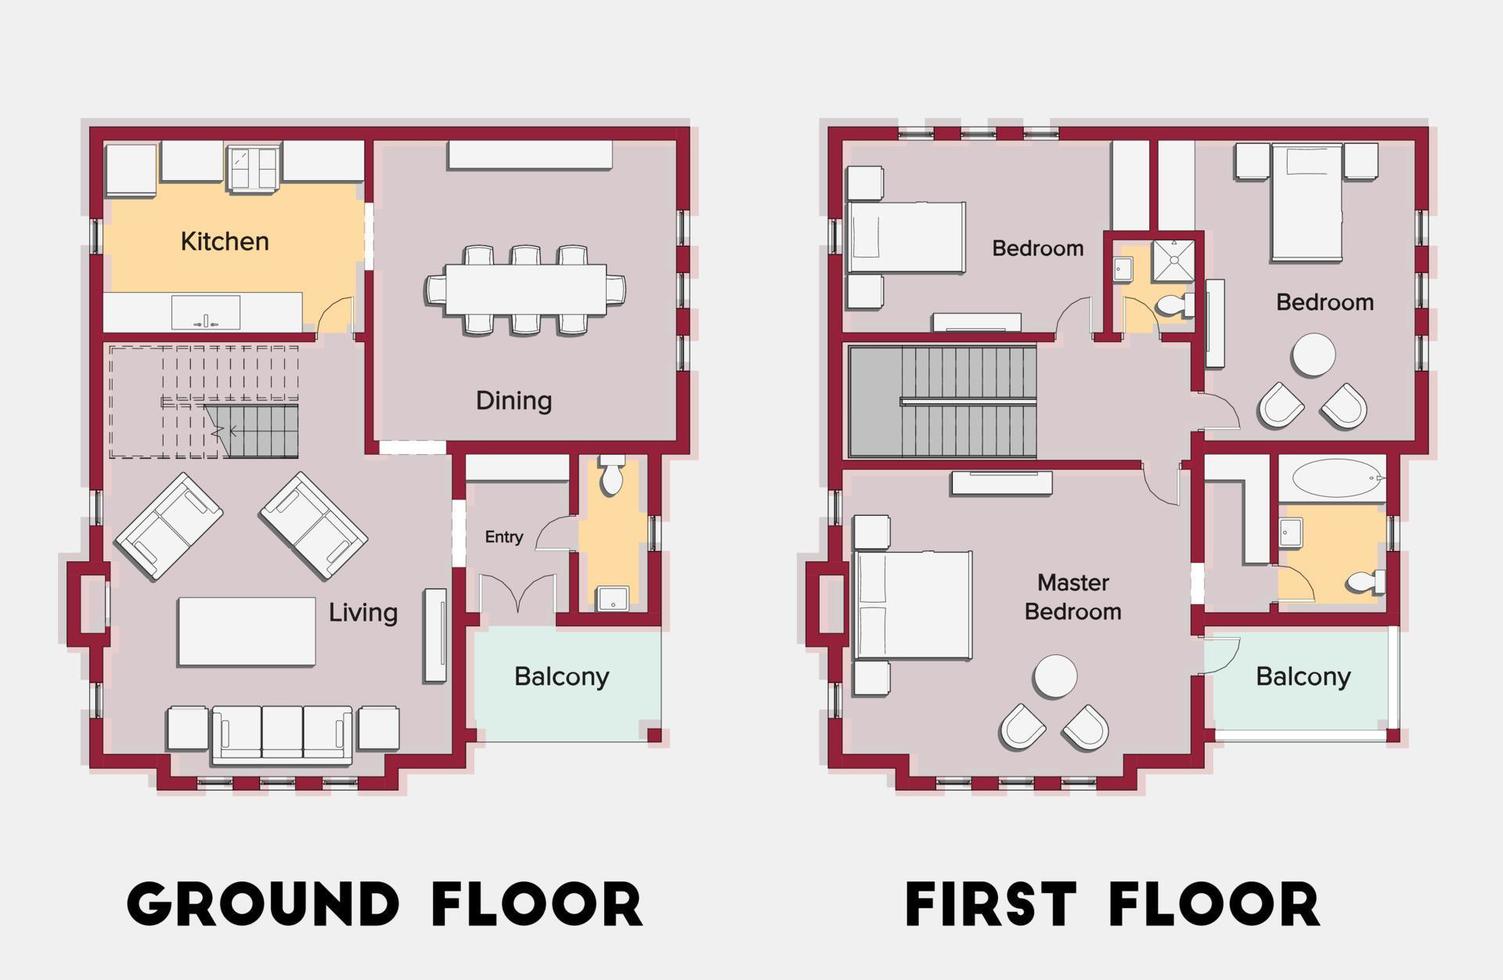 plan d'étage de couleur architecturale pour une maison à deux étages trois chambres. vecteur